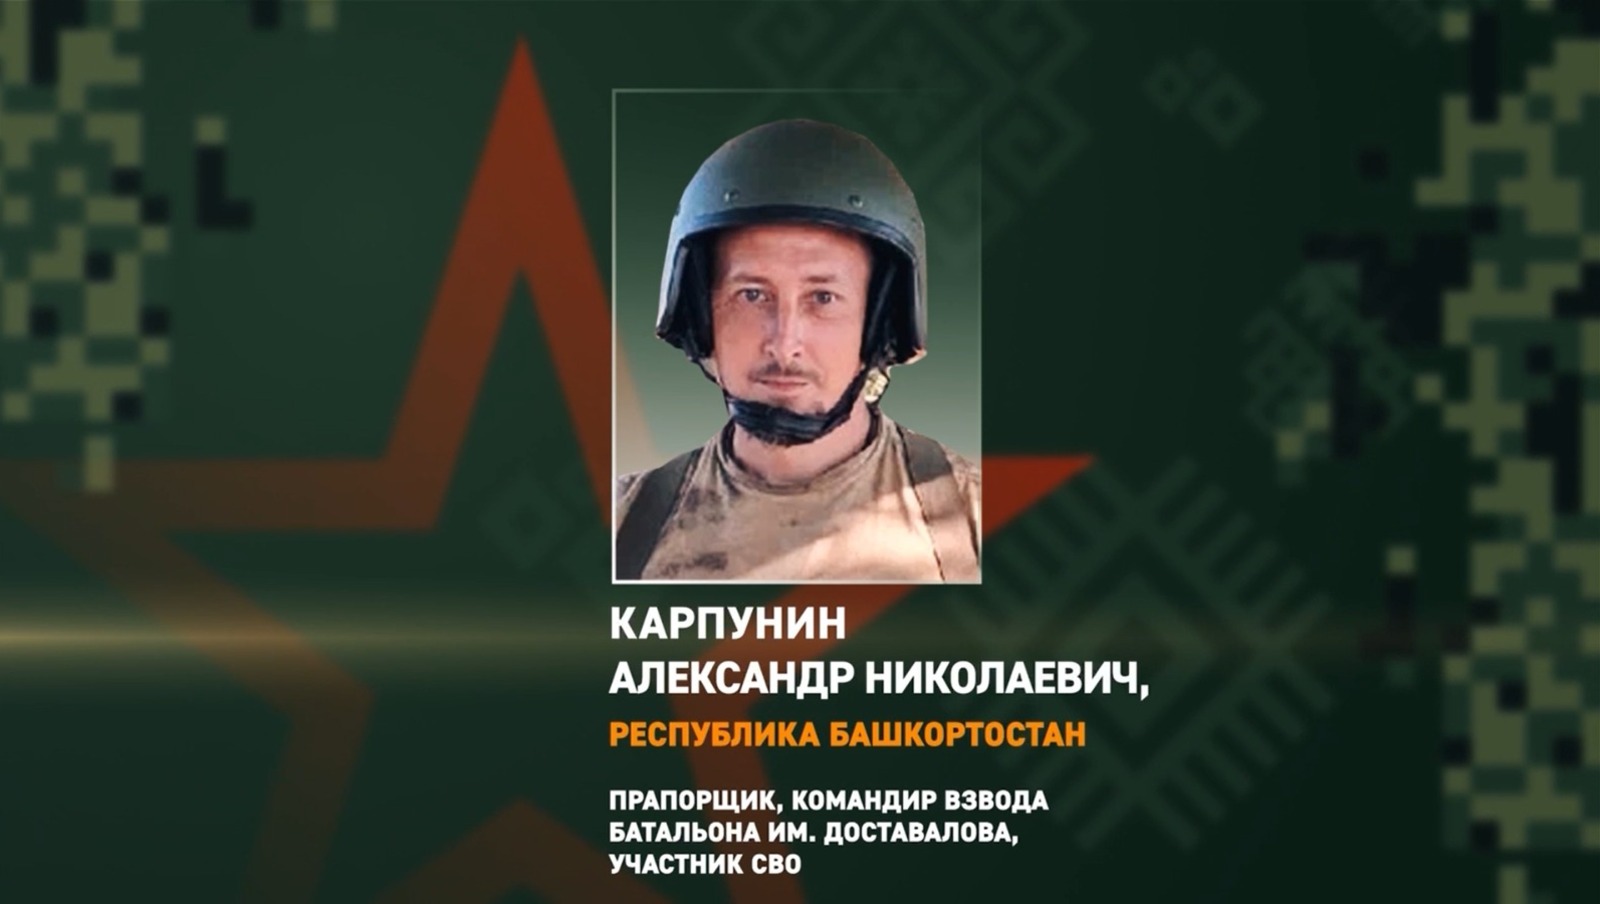 тг-канал «Башкирский батальон»